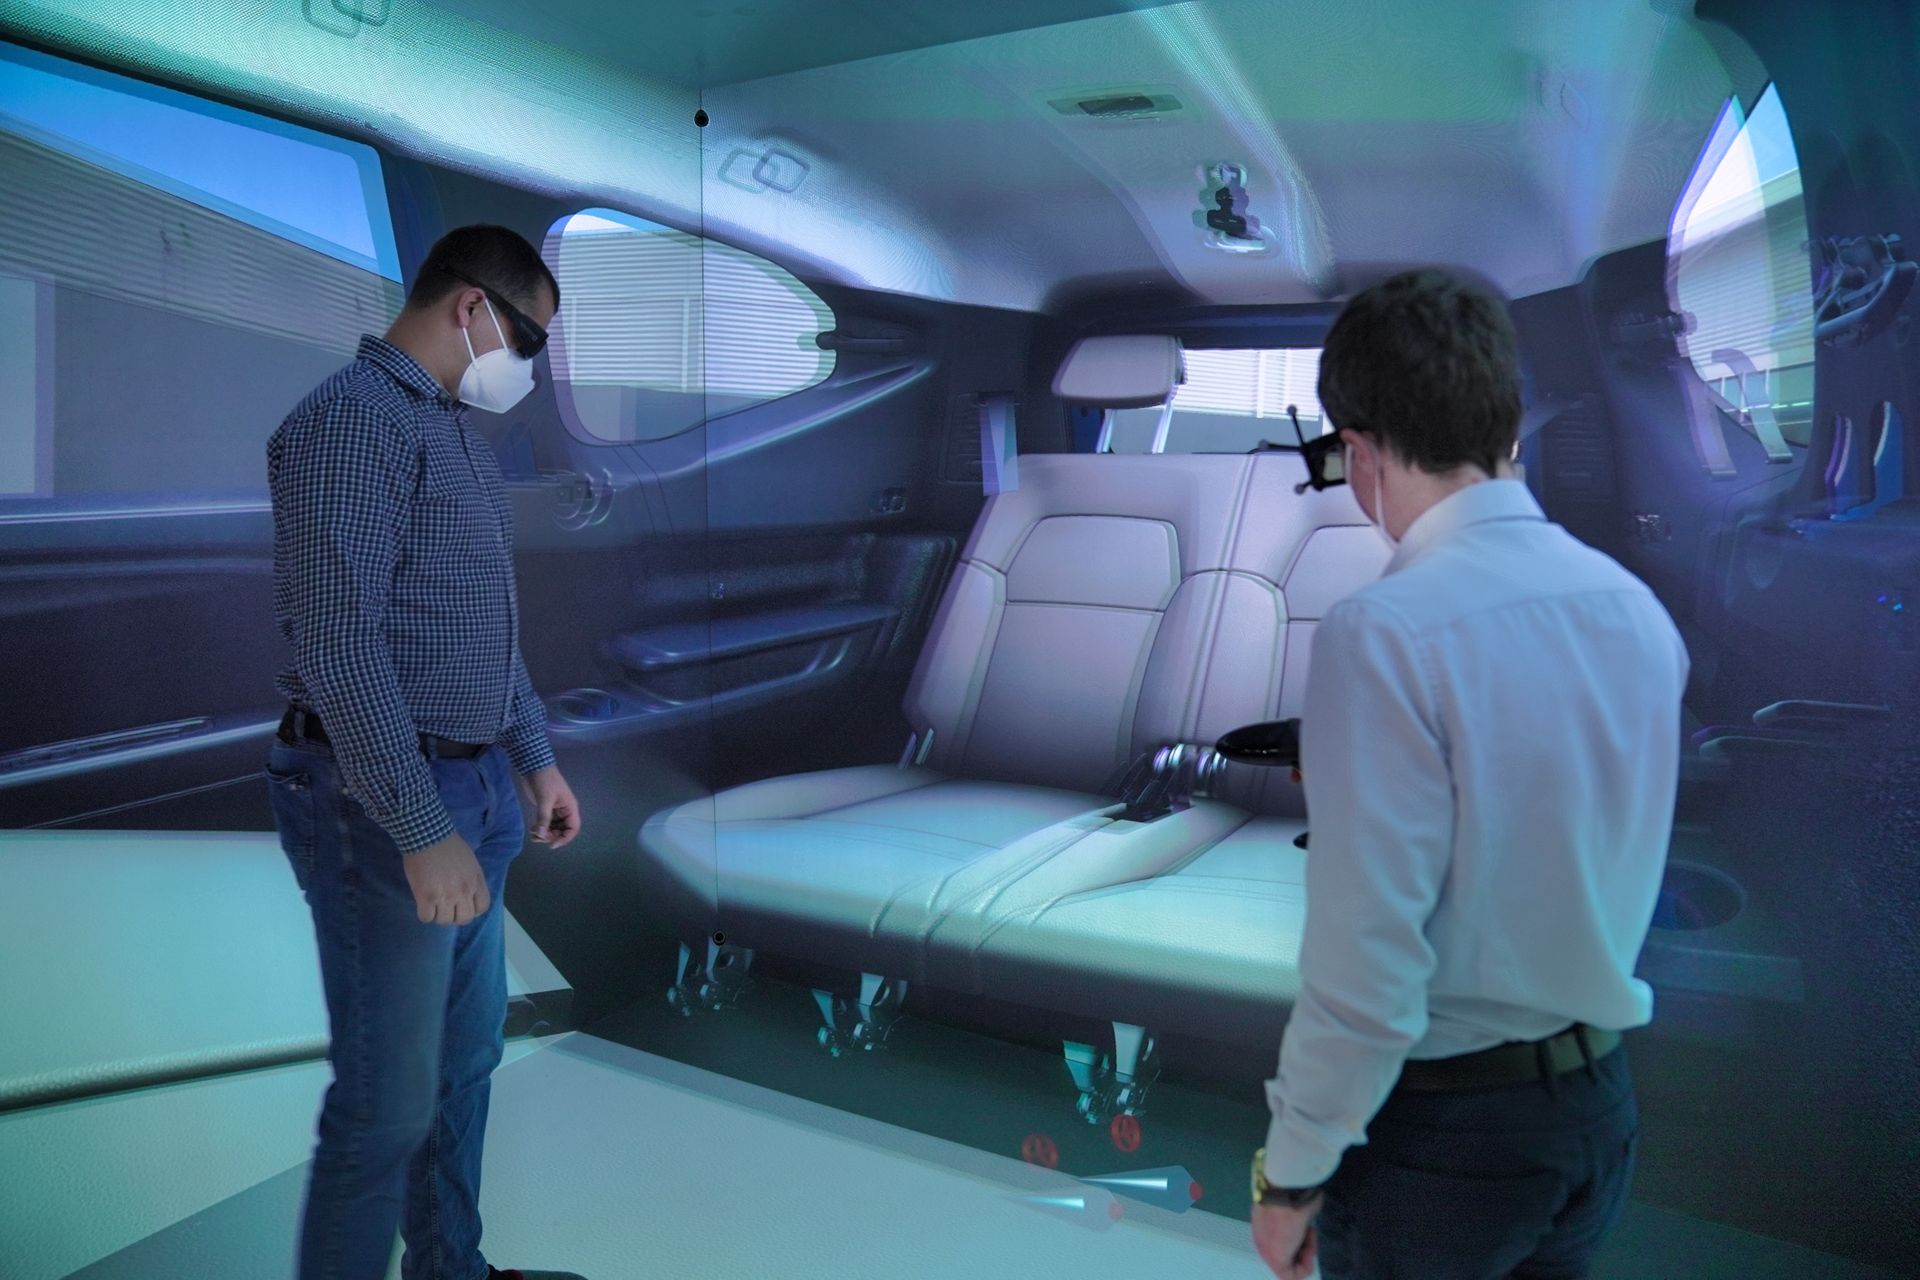 Il CAVE o “Cave Automatic Virtual Environment” in lingua inglese, adottato dalla Dacia nel Centro Tecnico di Titu, a 45 minuti da Bucarest in Romania, è un sistema di realtà virtuale che permette di muoversi intorno e dentro al veicolo in fase di progettazione